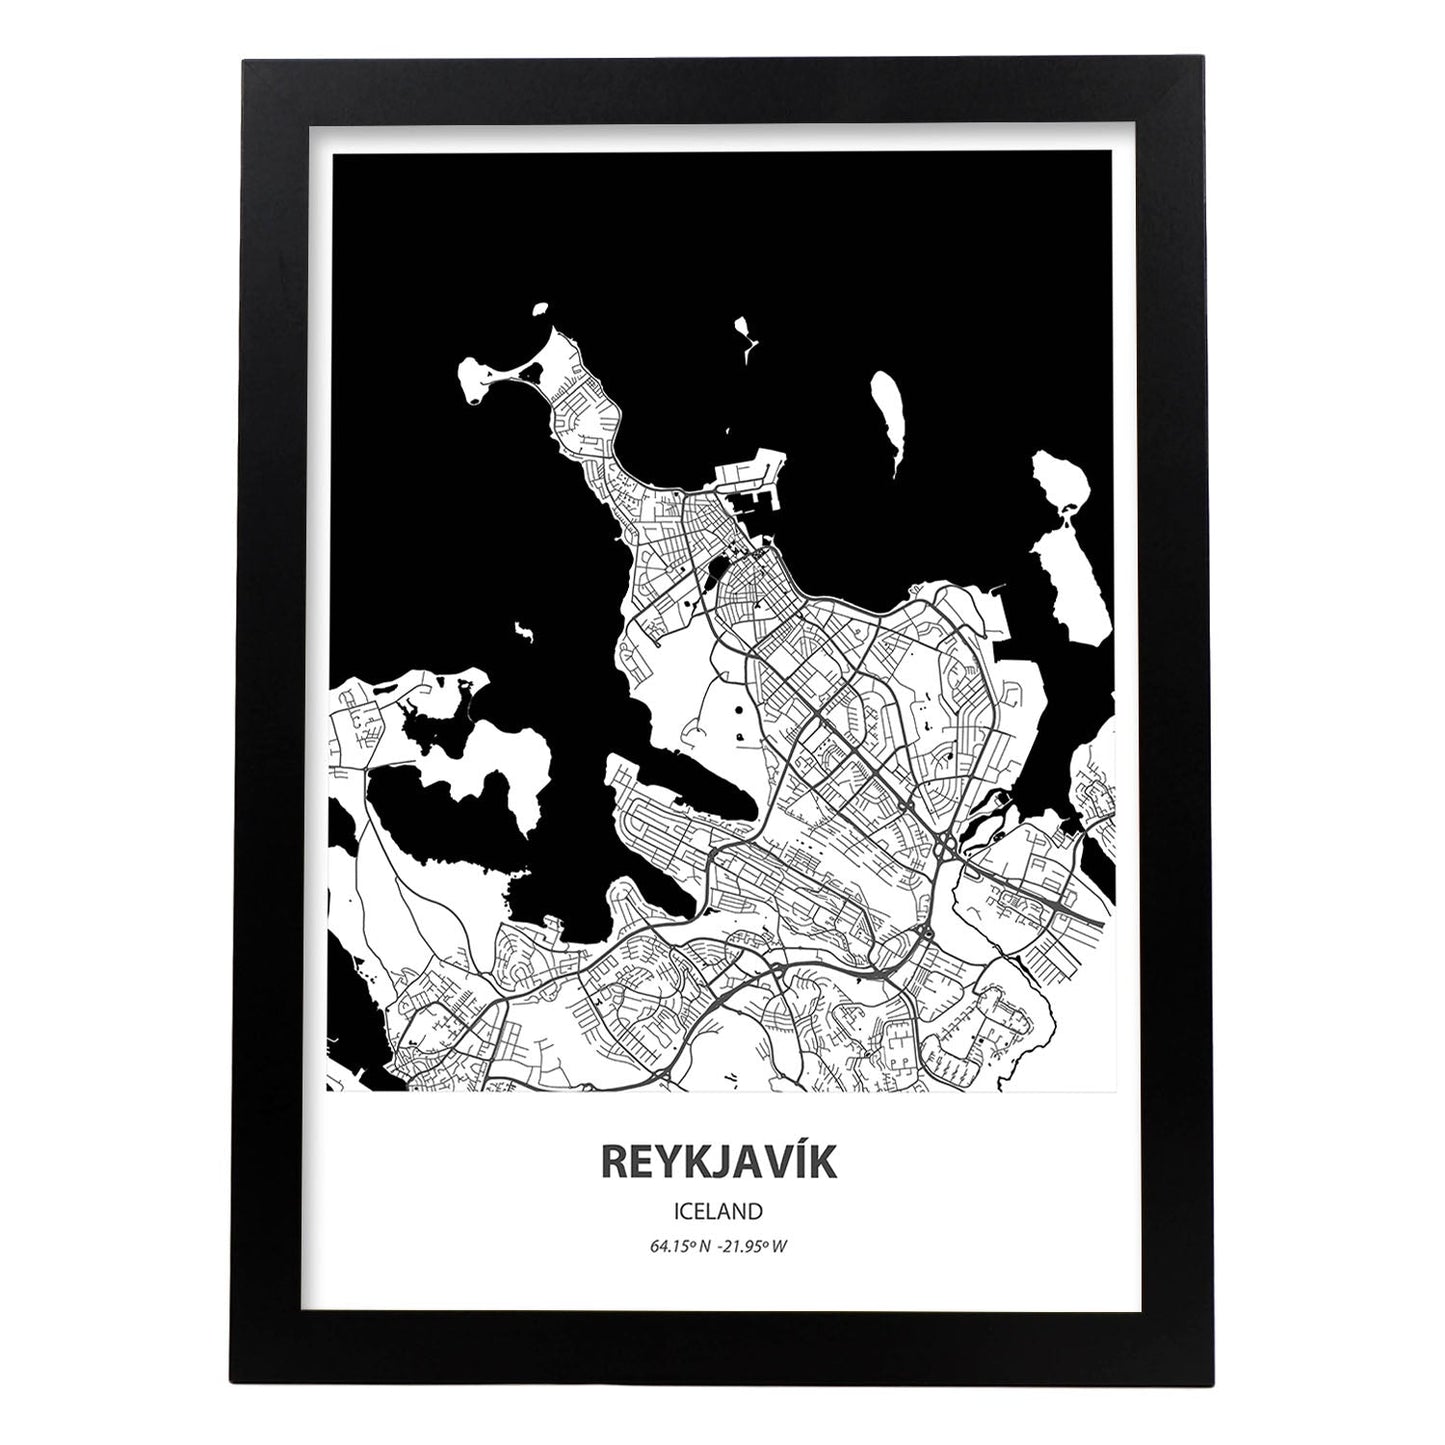 Poster con mapa de Reykjavik - Islandia. Láminas de ciudades del norte de Europa con mares y ríos en color negro.-Artwork-Nacnic-A3-Marco Negro-Nacnic Estudio SL